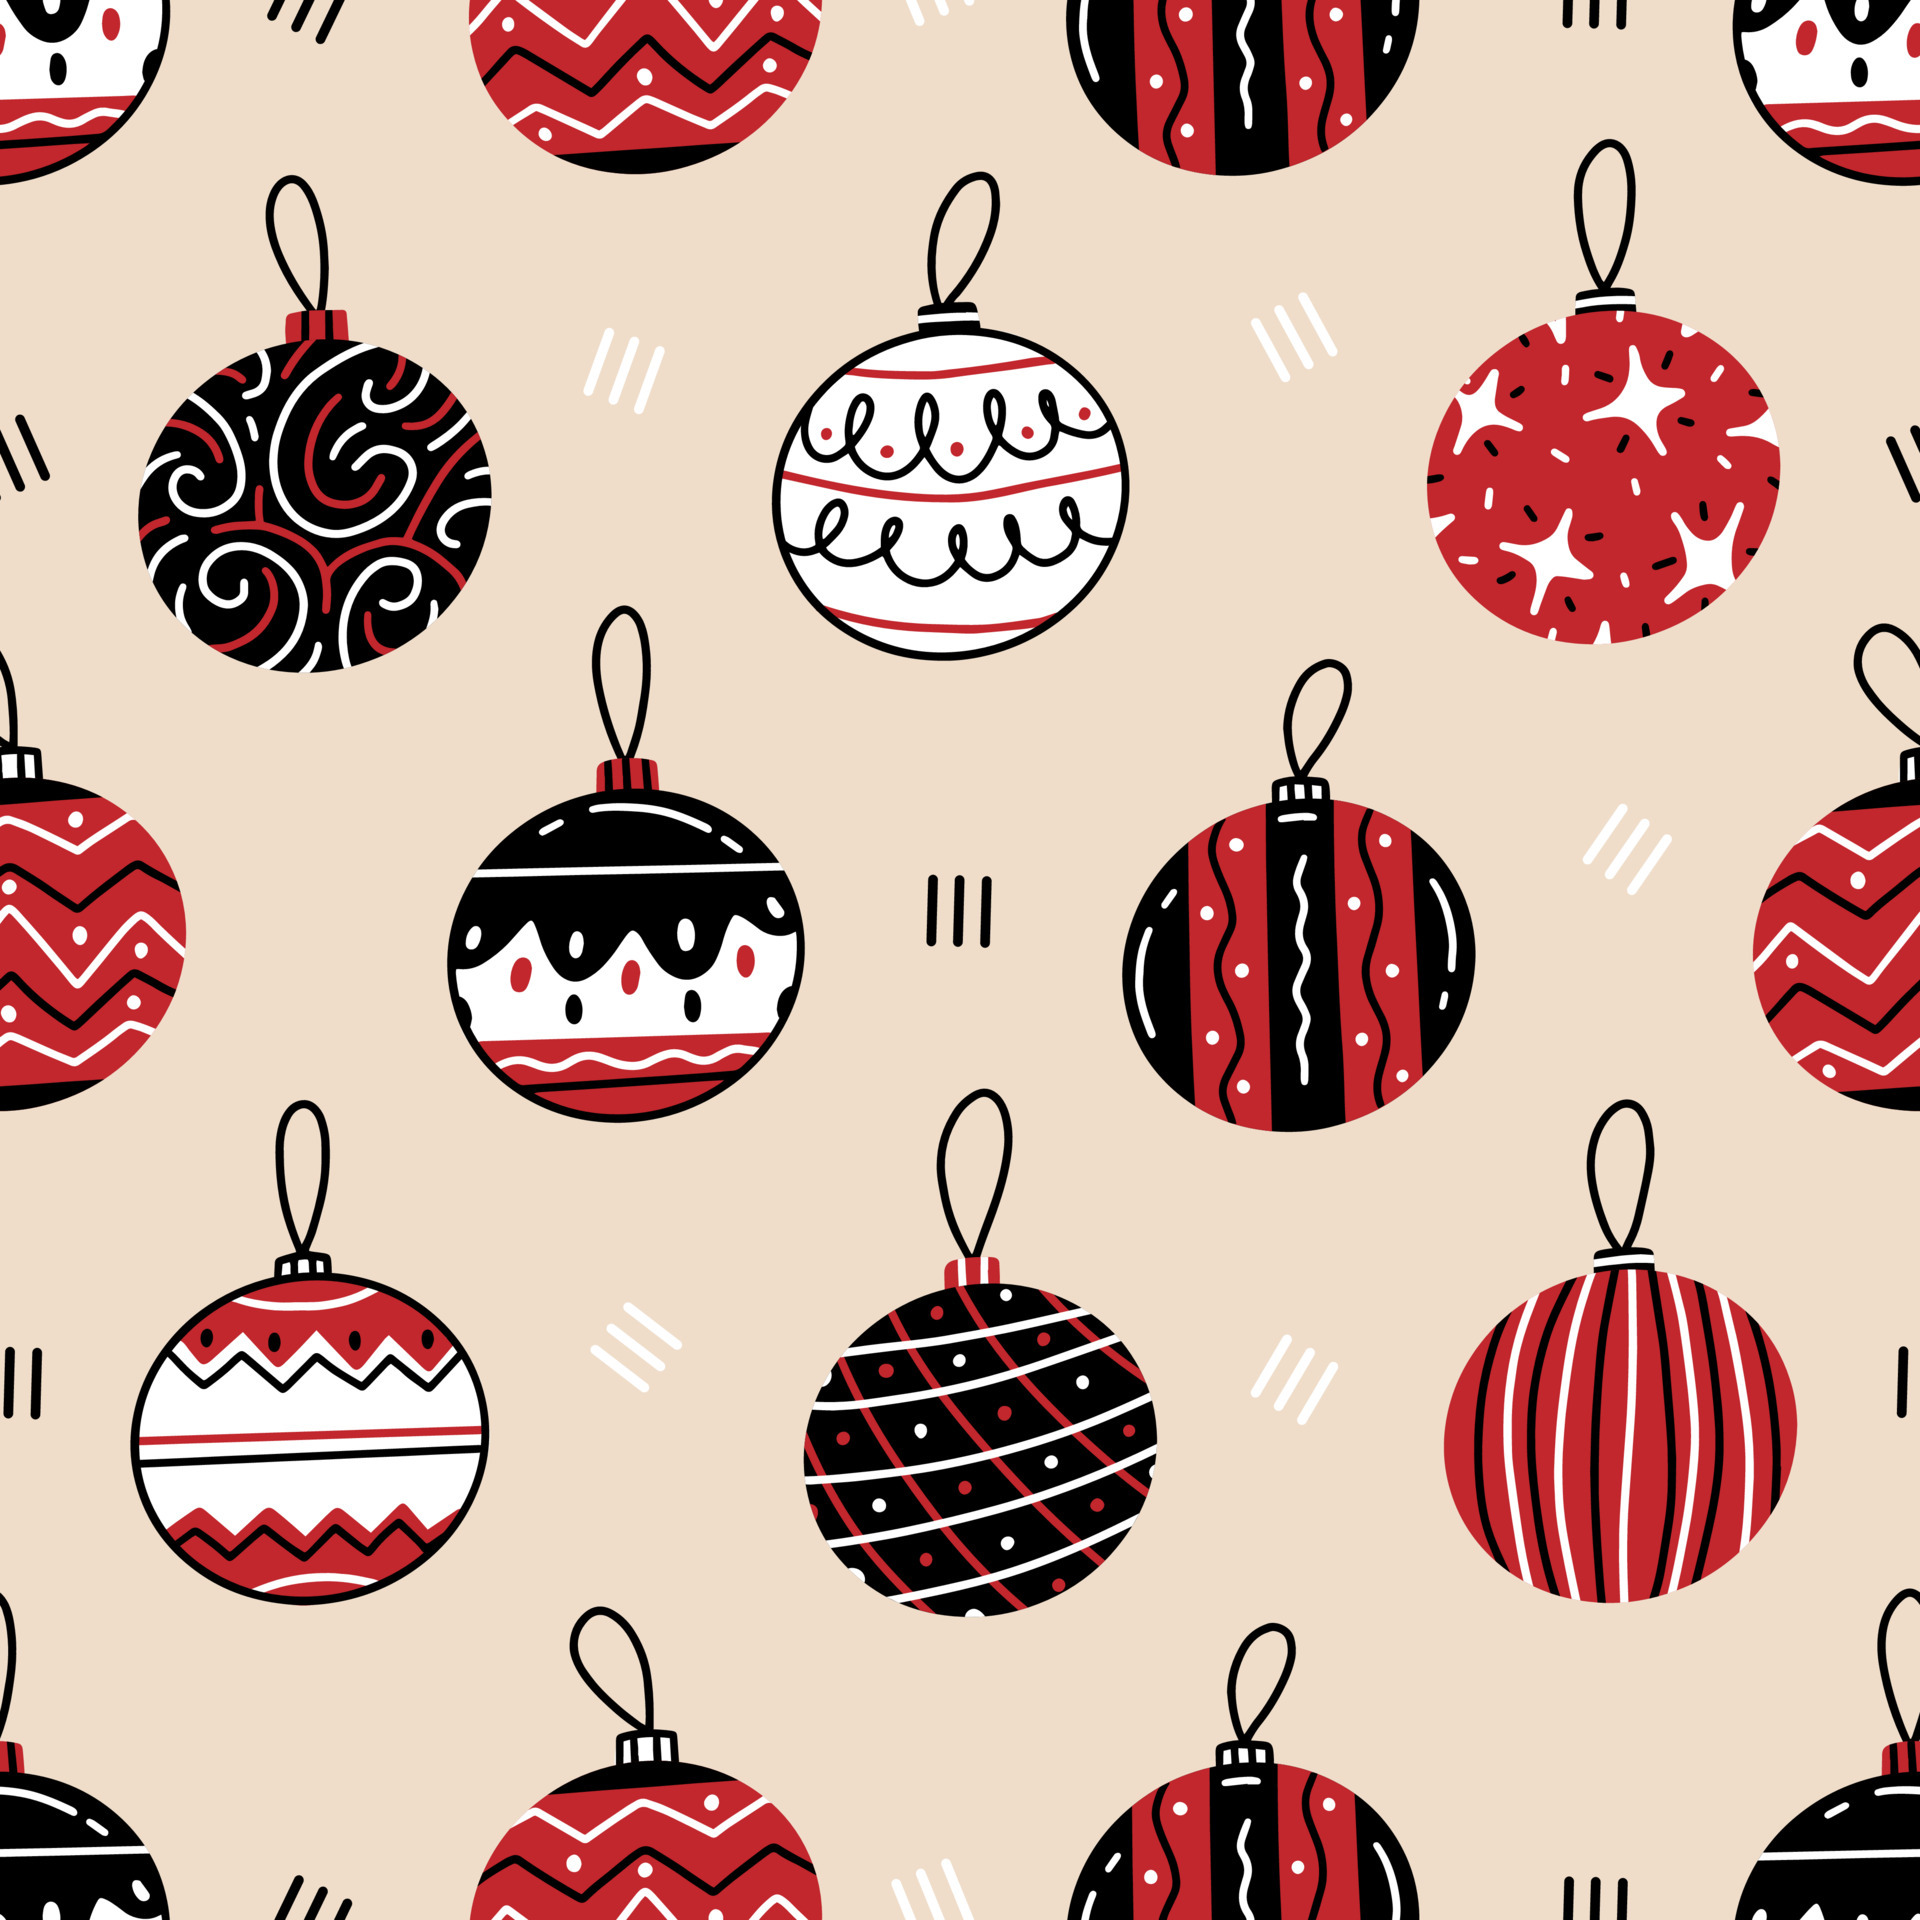 Những quả cầu Giáng sinh trắng-đen-đỏ là một trong những khối vuông bí ẩn và quen thuộc nhất của mùa lễ hội. Hãy xem ngay hình ảnh này để ngắm nhìn chúng từ góc nhìn hoàn toàn mới và tinh tế hơn. Được trang trí bằng họa tiết đơn giản nhưng tinh tế, chúng thực sự đẹp mắt!